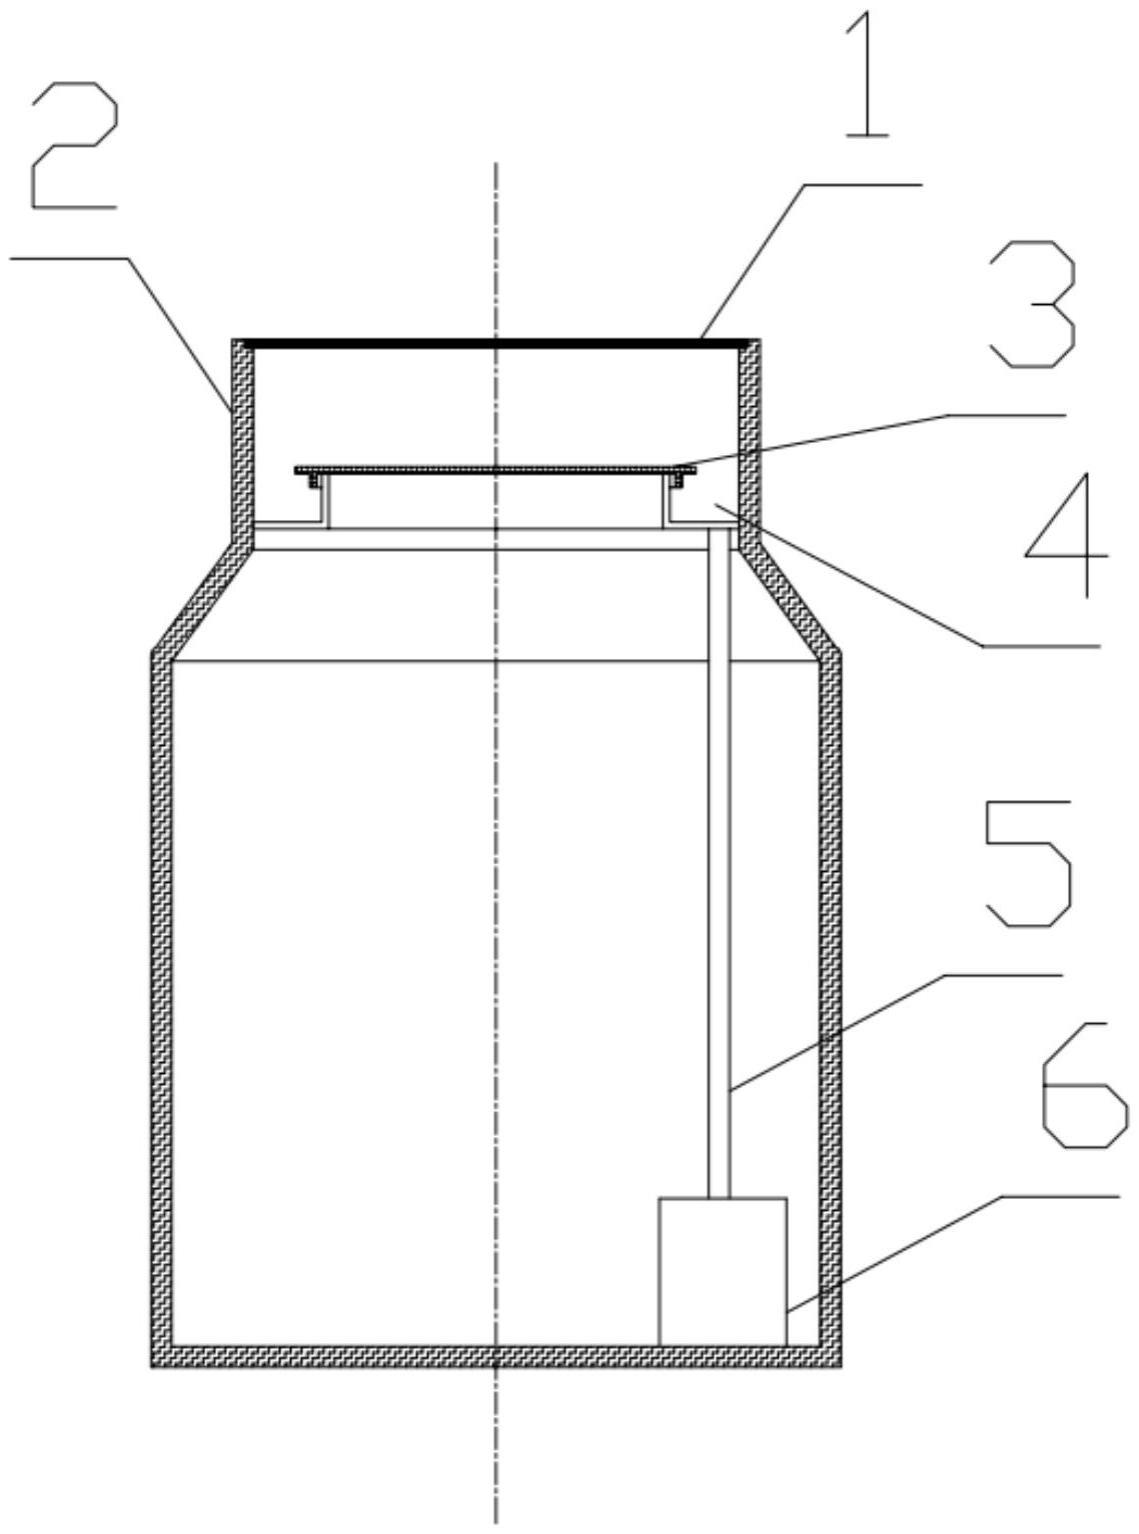 具备储水功能的加油站人孔井内盖结构的制作方法